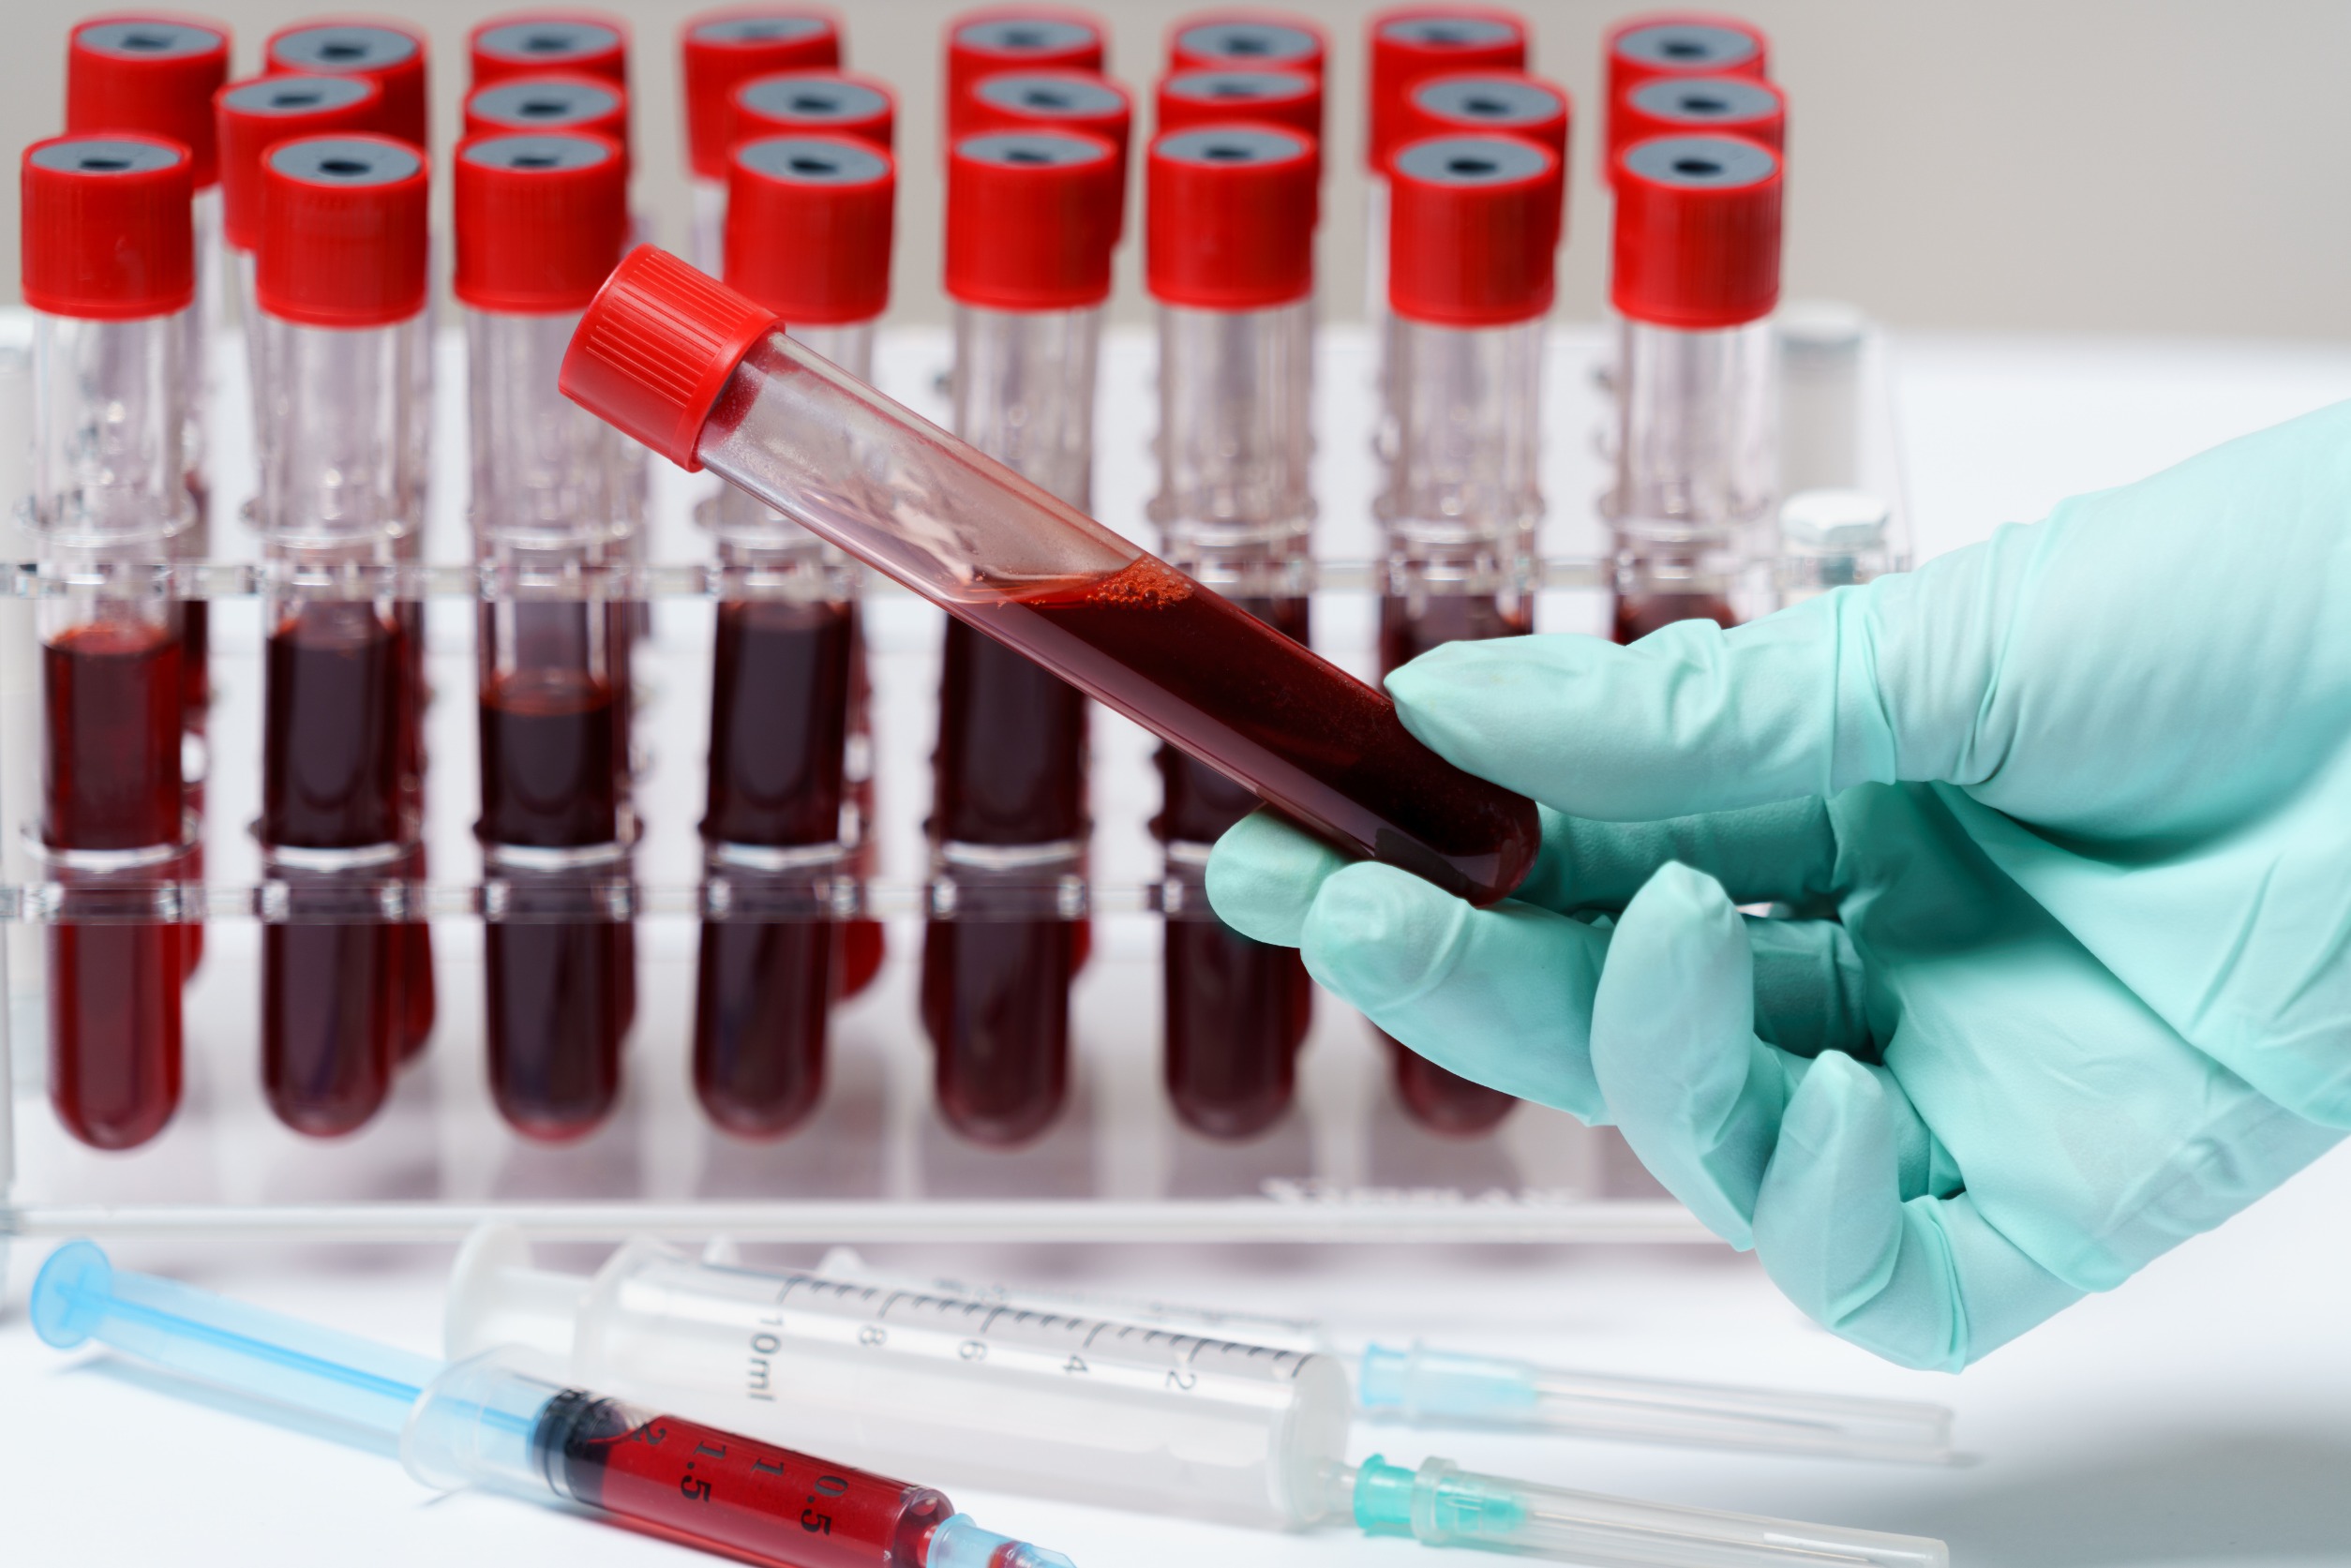 Analityk medyczny trzyma w dłoni fiolkę z krwią pobraną pacjentowi, aby poddać ją diagnostyce. /Źródło: 123rf.com